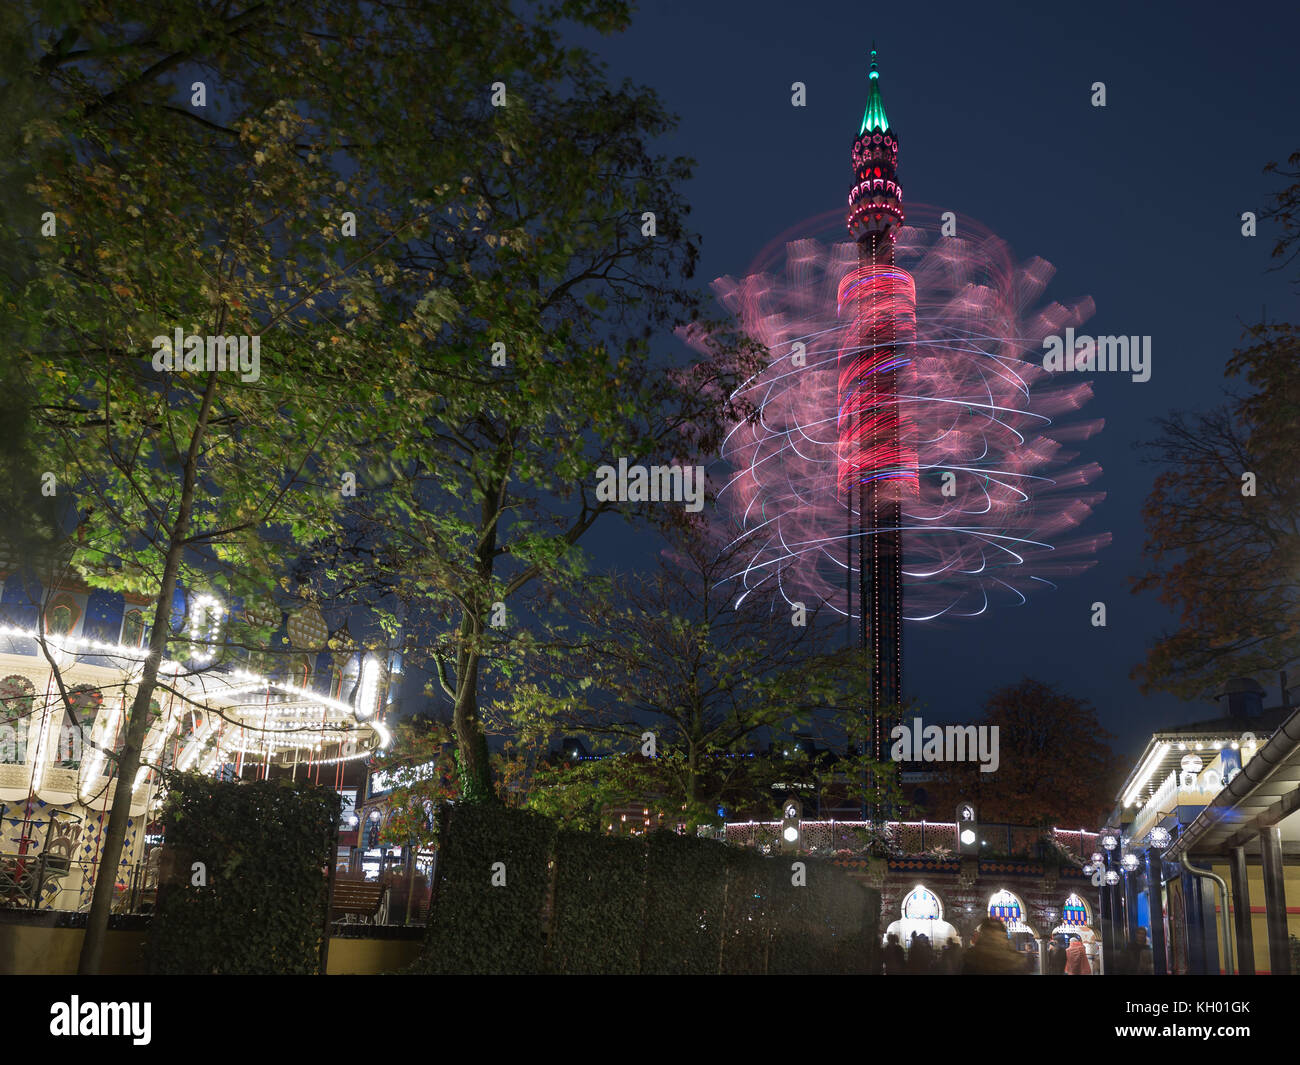 Una lunga esposizione di merry go round in notturna a Tivoli Gardens Copenhagen Foto Stock